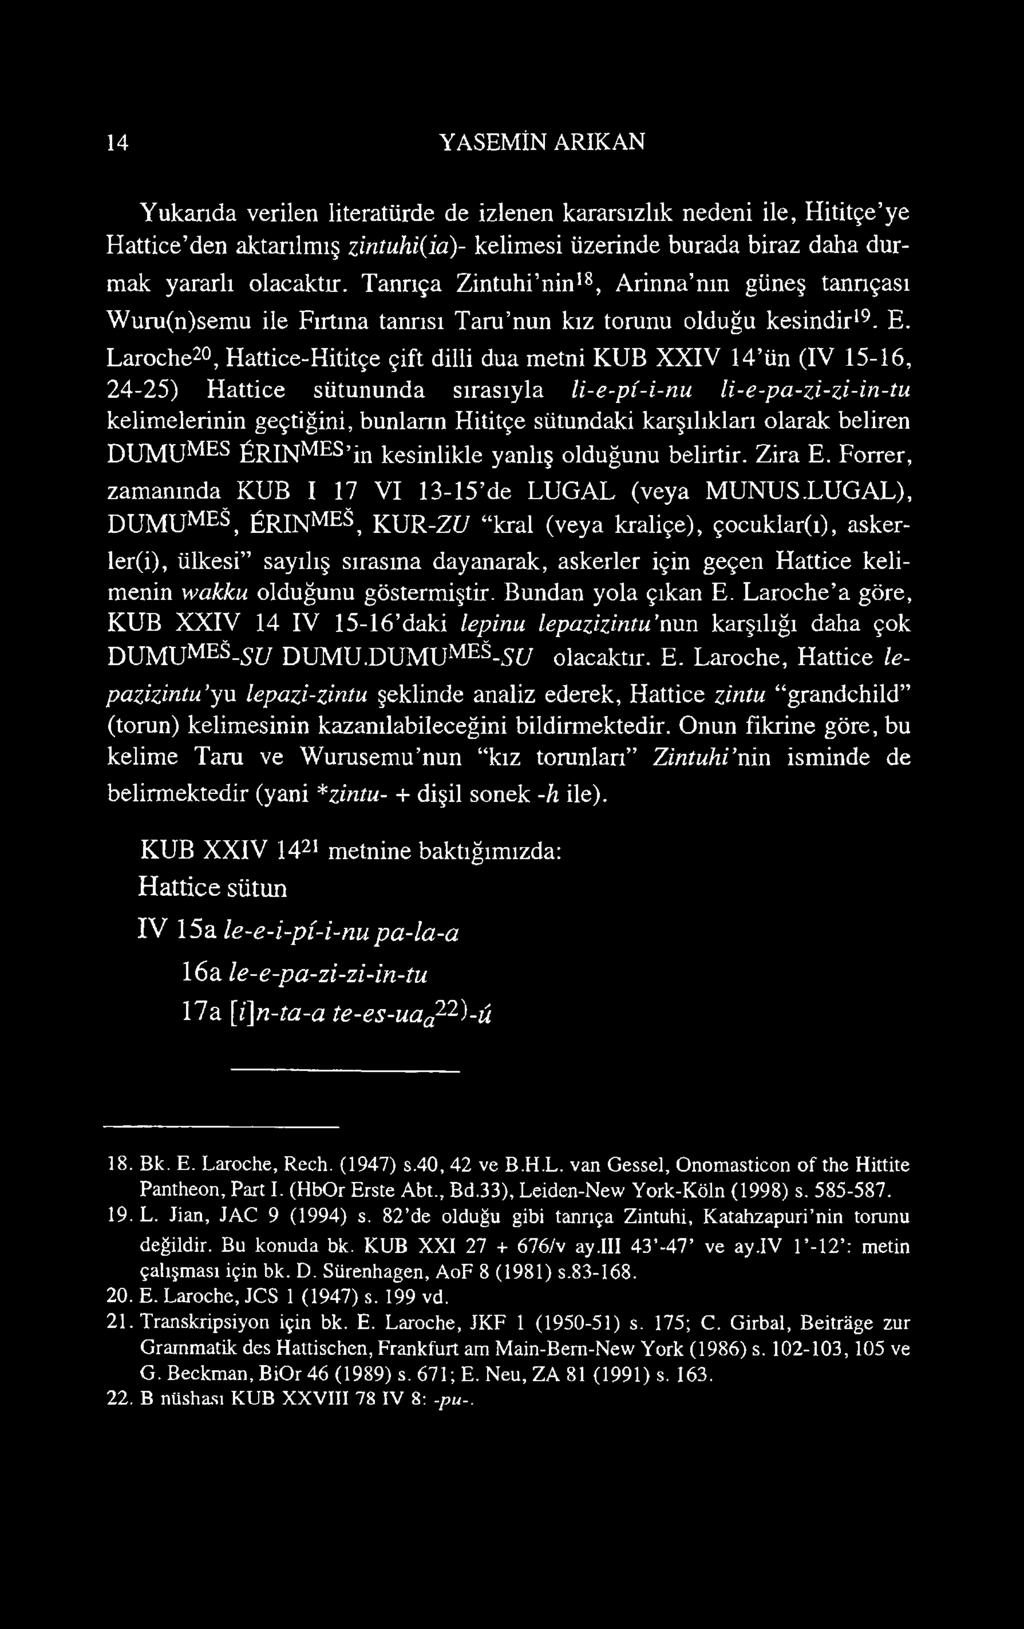 Laroche20, Hattice-Hititçe çift dilli dua metni KUB XXIV 14 ün (IV 15-16, 24-25) Hattice sütununda sırasıyla li-e-pi-i-nu li-e-pa-zi-zi-in-tu kelimelerinin geçtiğini, bunların Hititçe sütundaki